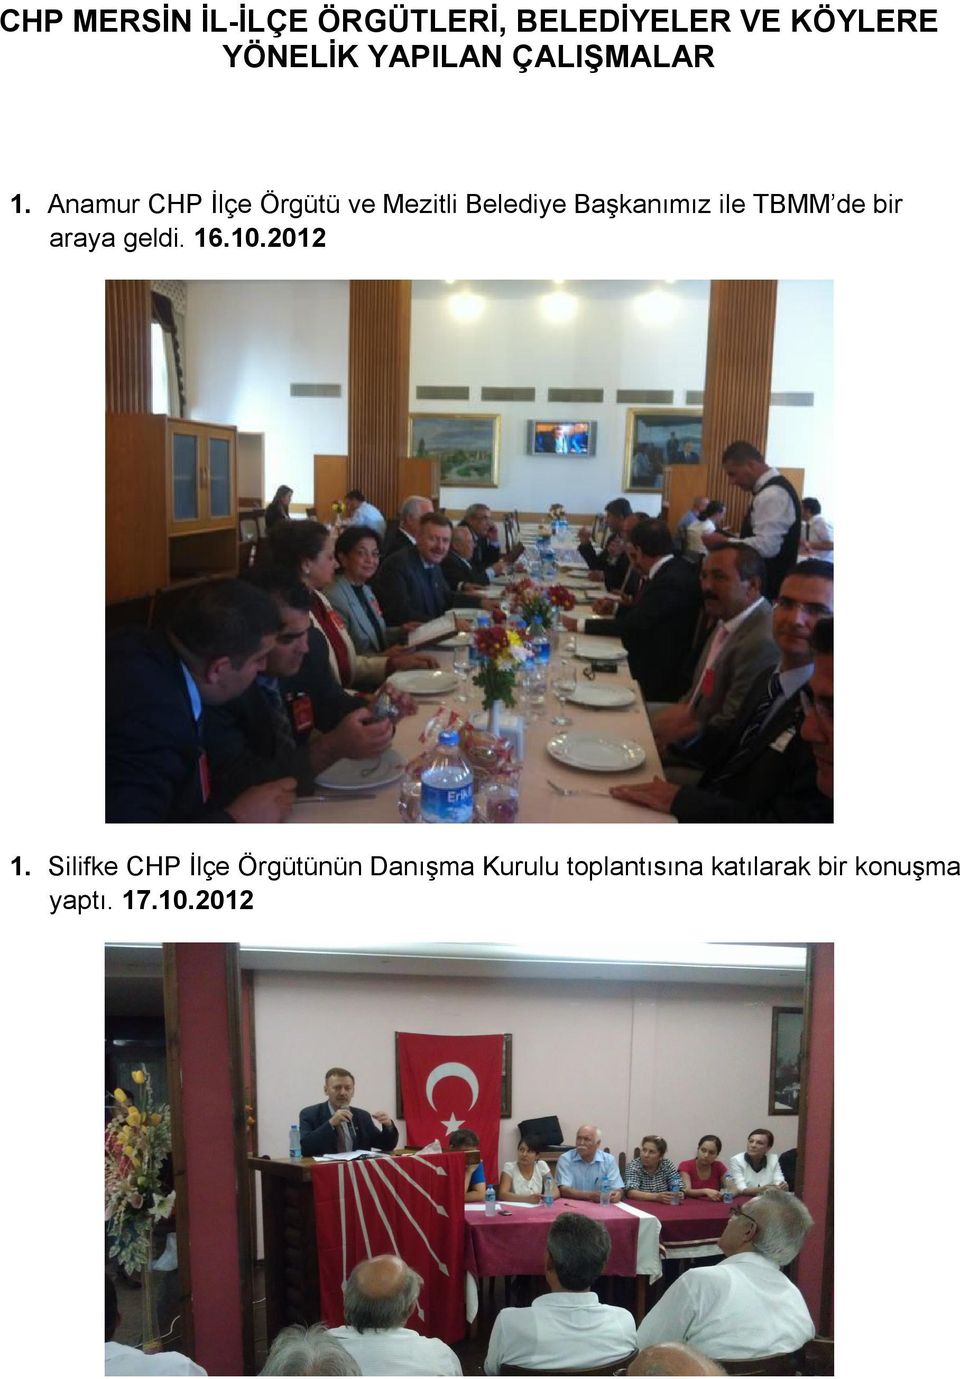 Anamur CHP İlçe Örgütü ve Mezitli Belediye Başkanımız ile TBMM de